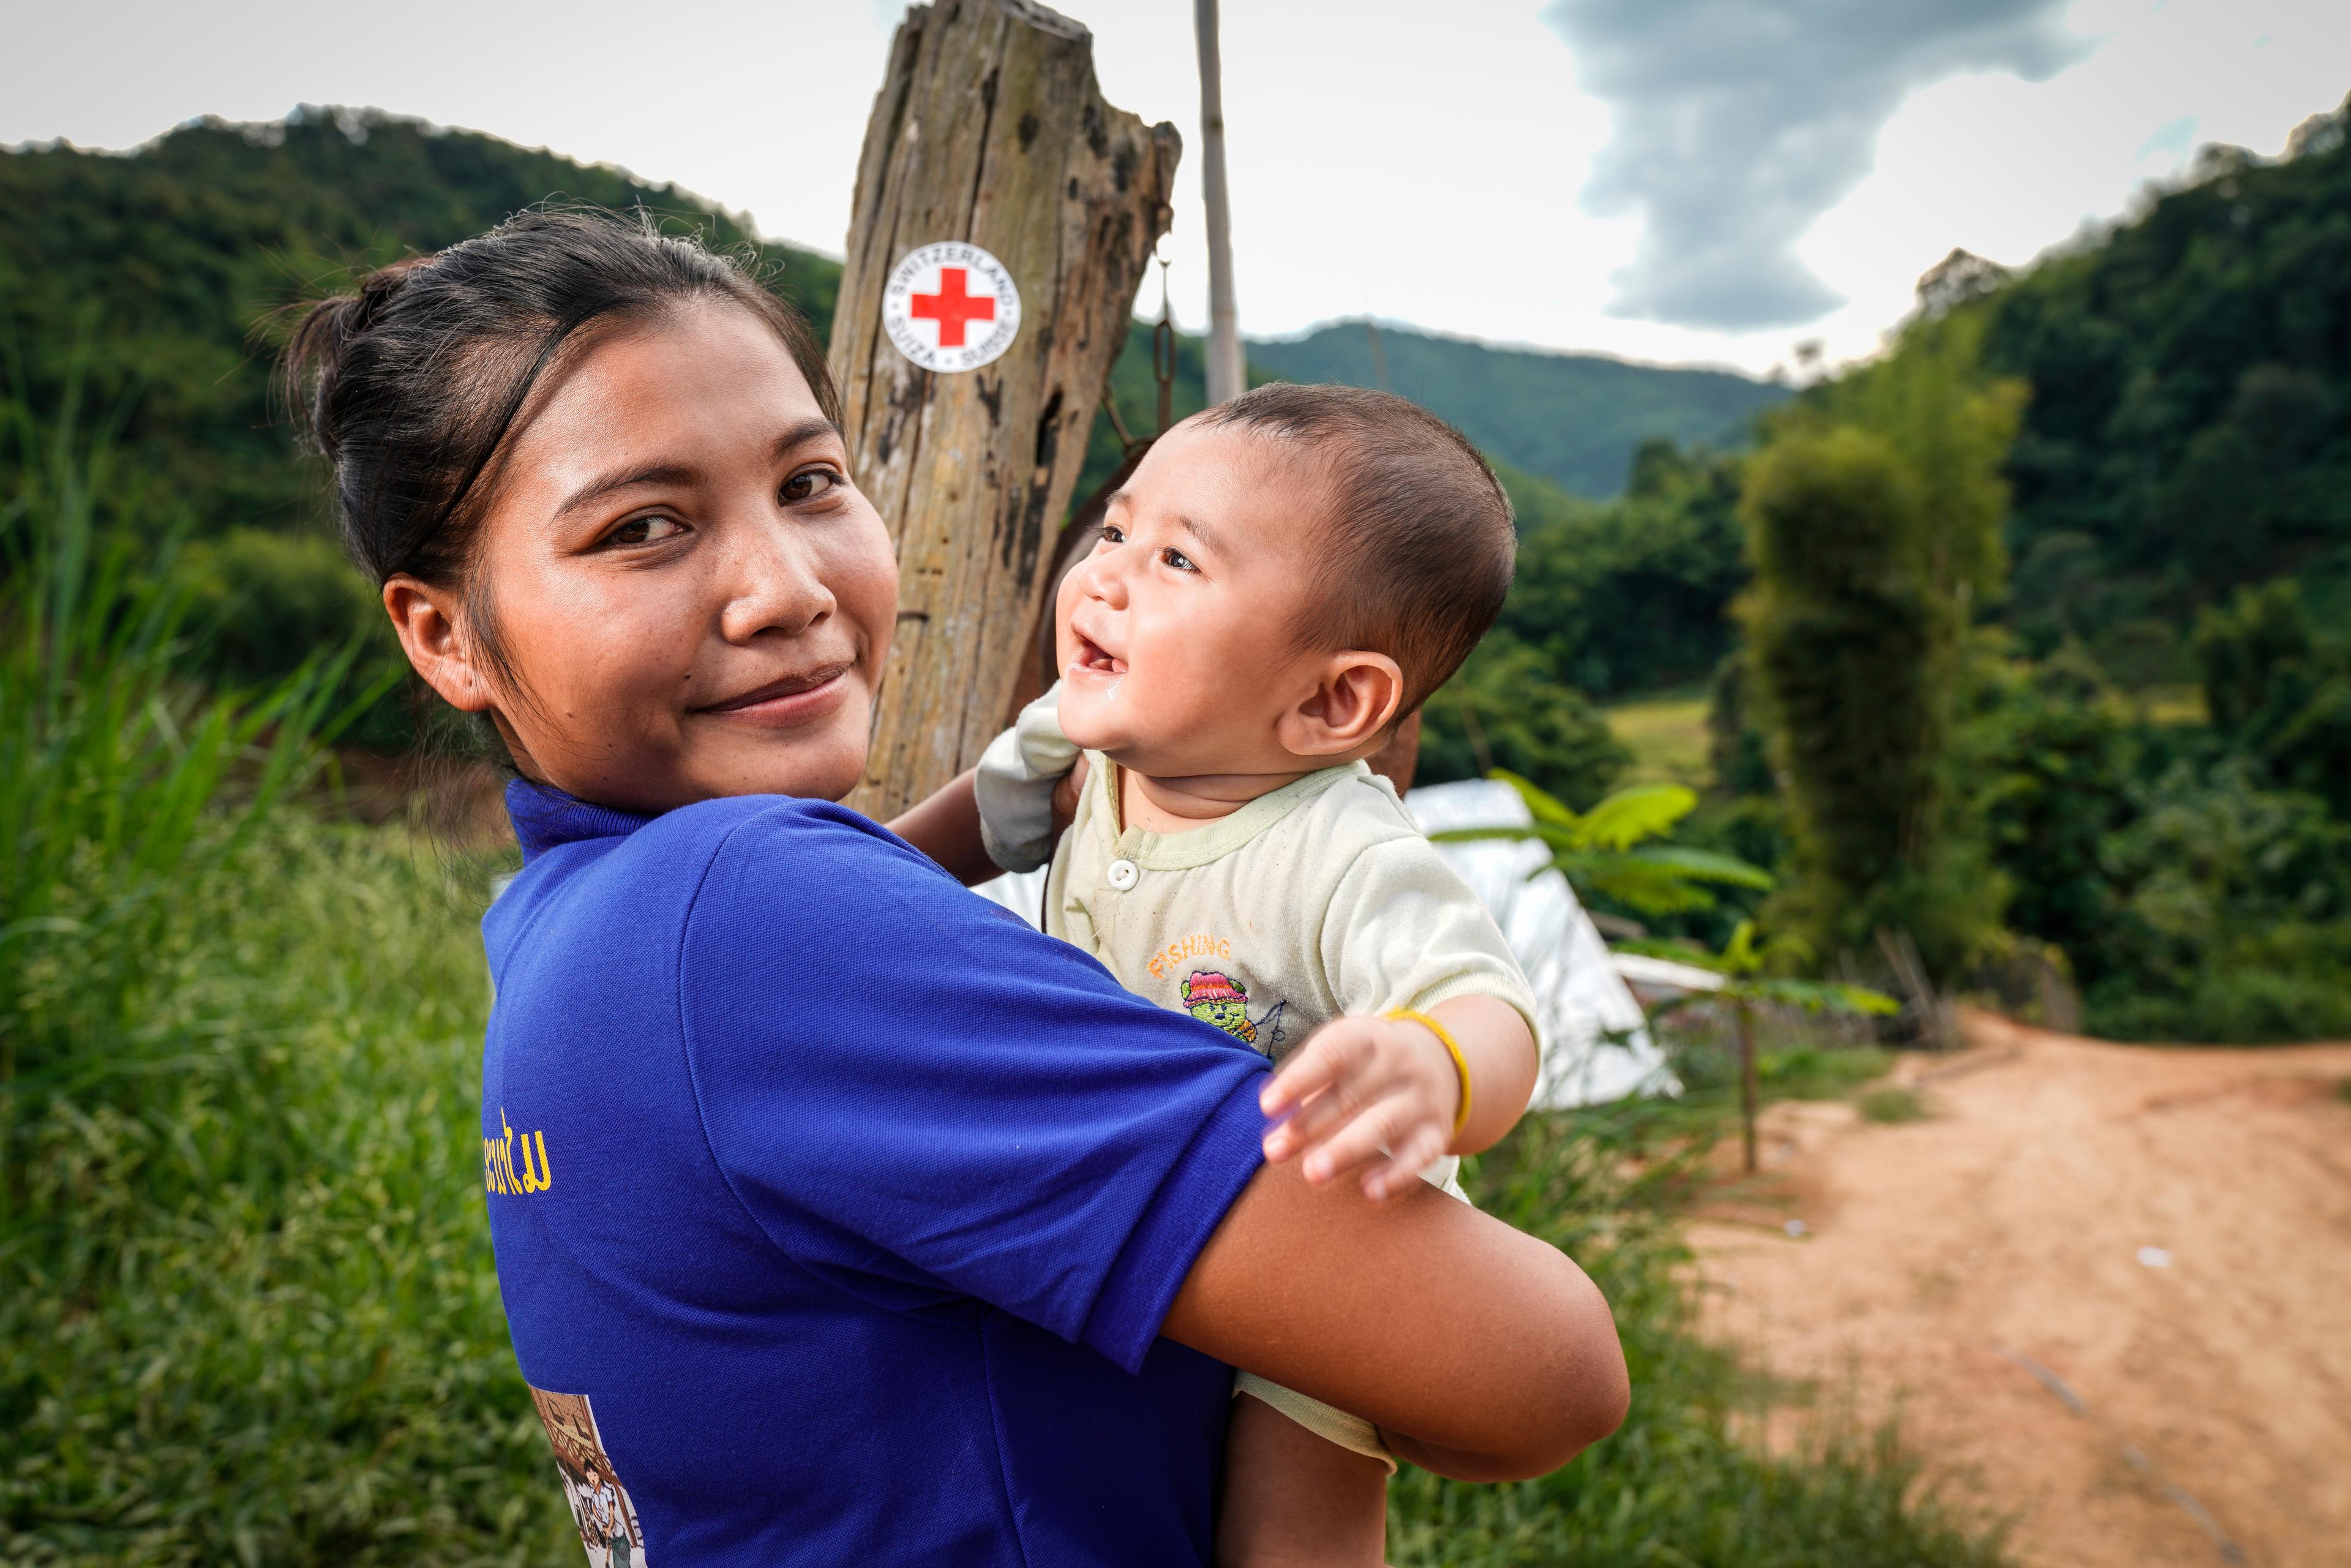 Una volontaria della Croce Rossa con un bambino in braccio che le sorride. Nel distretto di Phonexay, provincia di Luang Prabang, Laos.